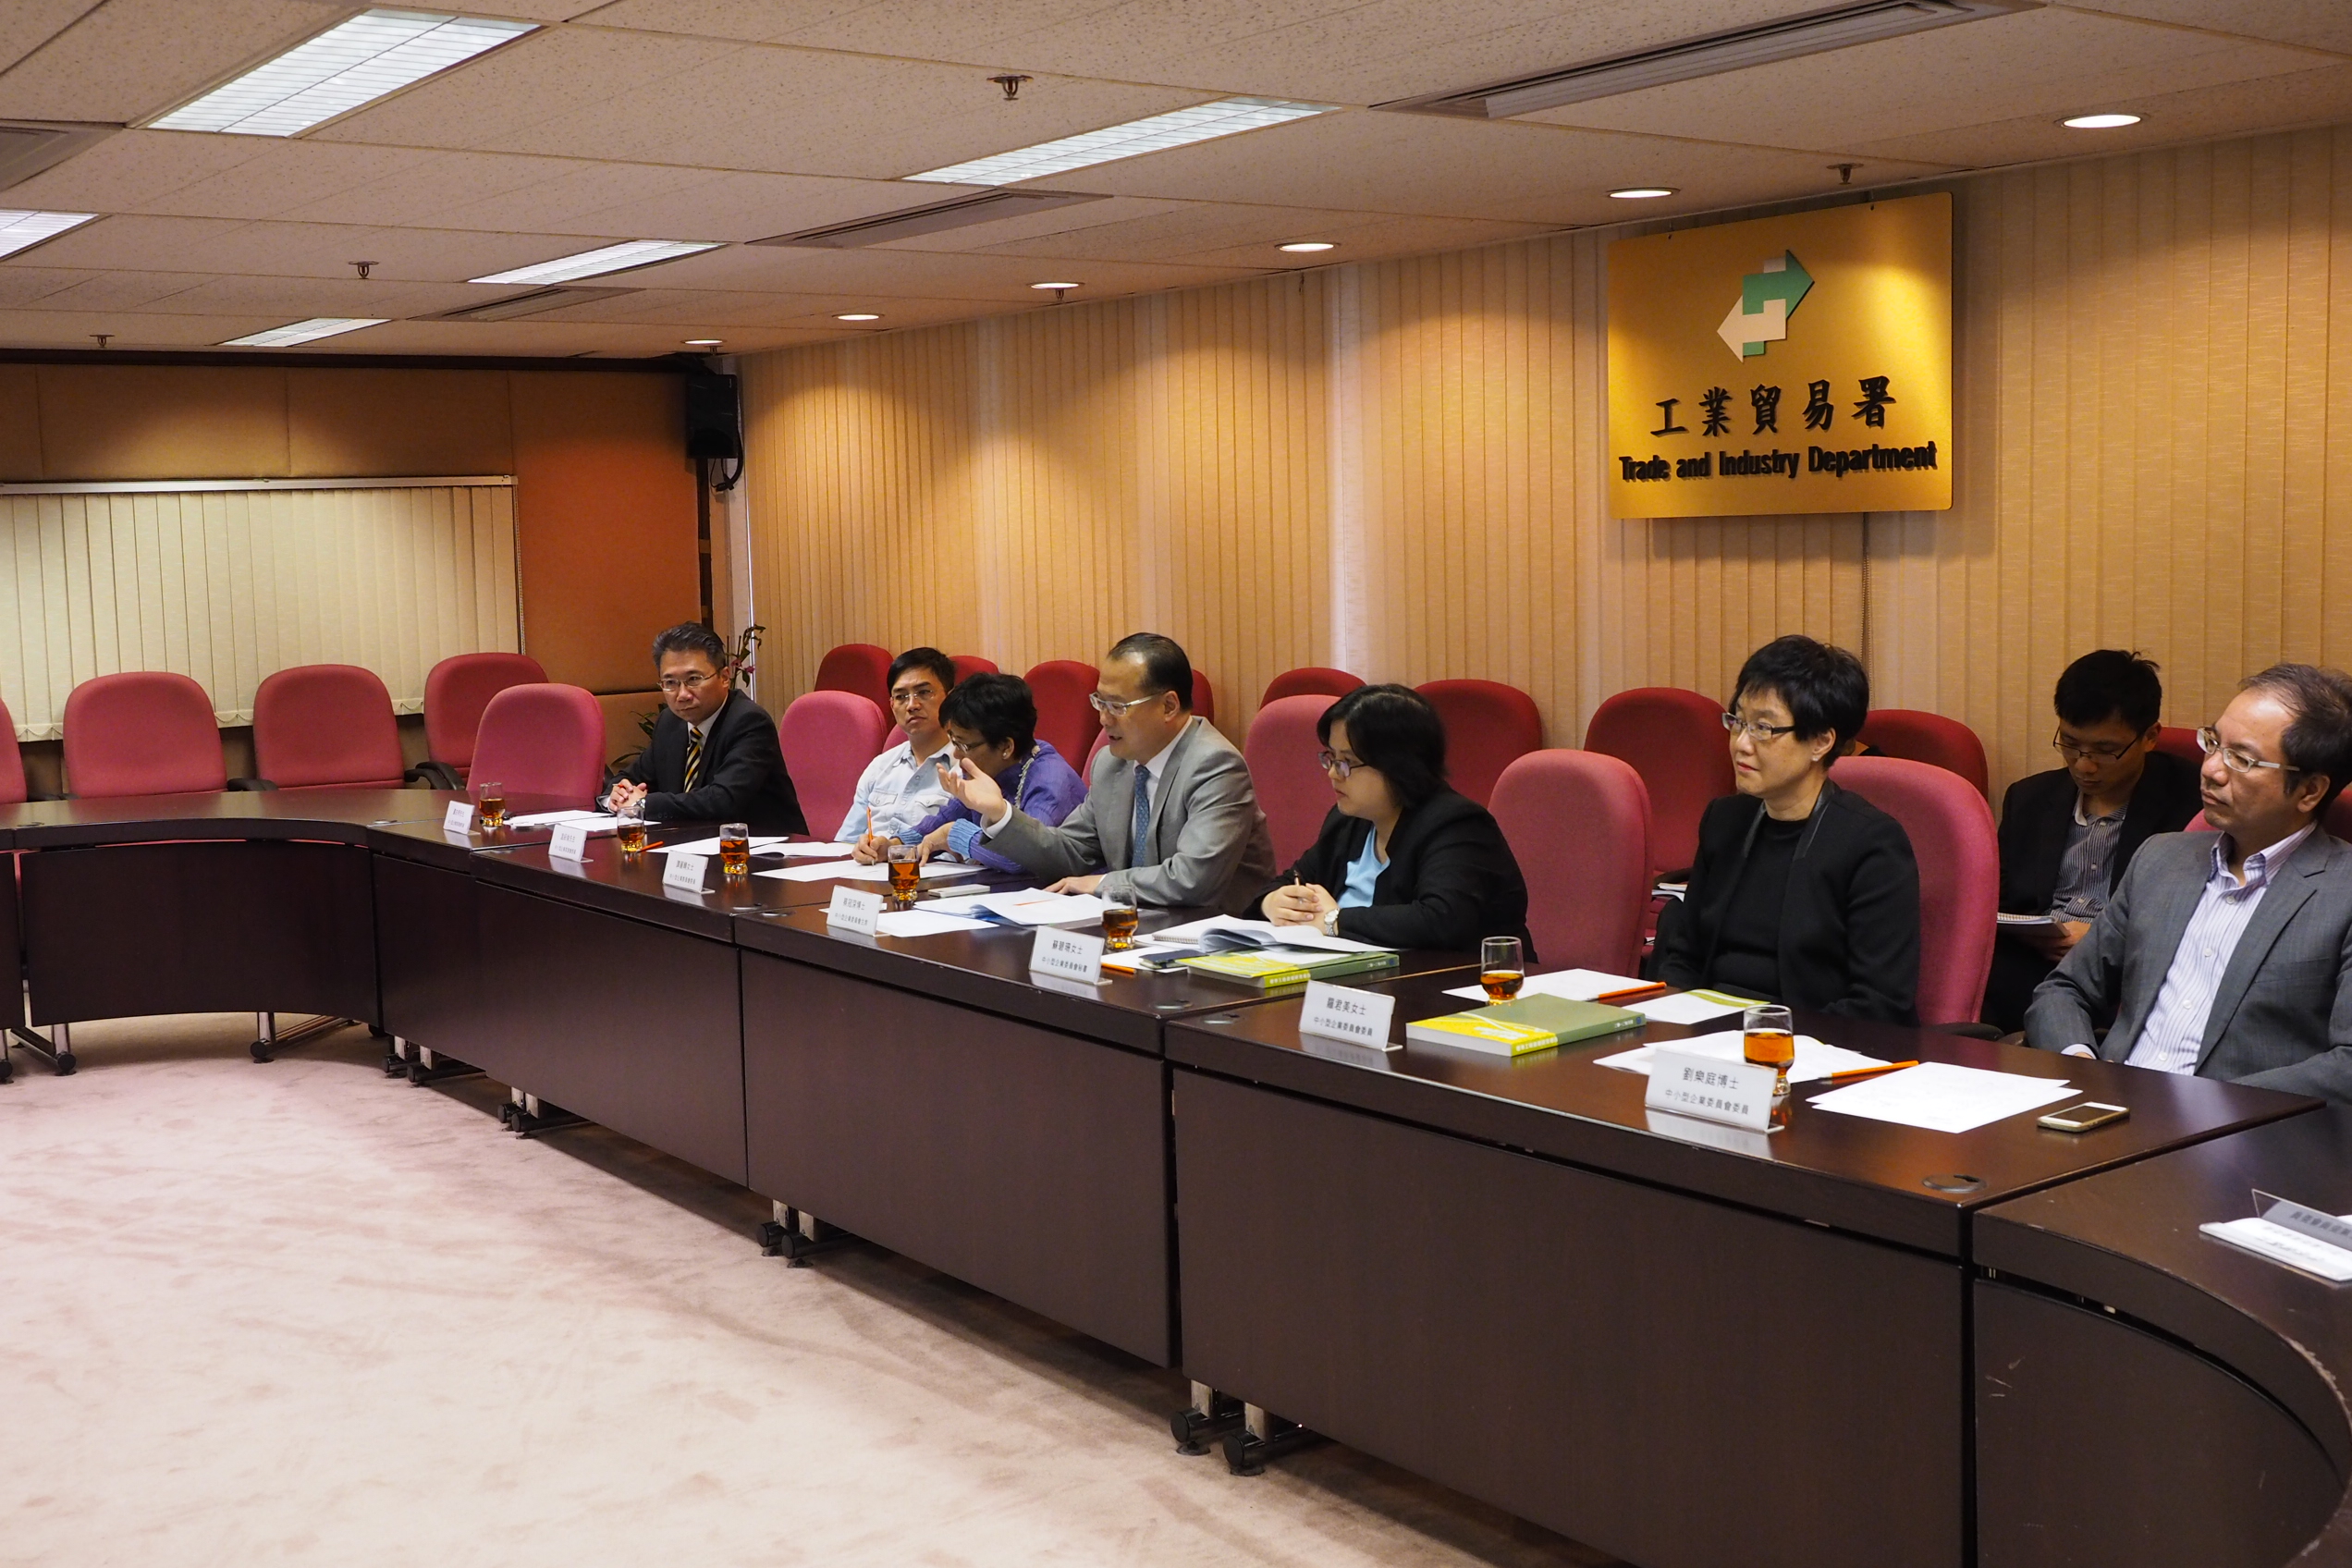 圖         片         2 : 中         小         型         企         業         委         員         會         於         2014 年         5 月         2 日         與         中         小         企         業         組         織         代         表         會         面         ，         就         標         準         工         時         政         策         交         流         意         見         。        